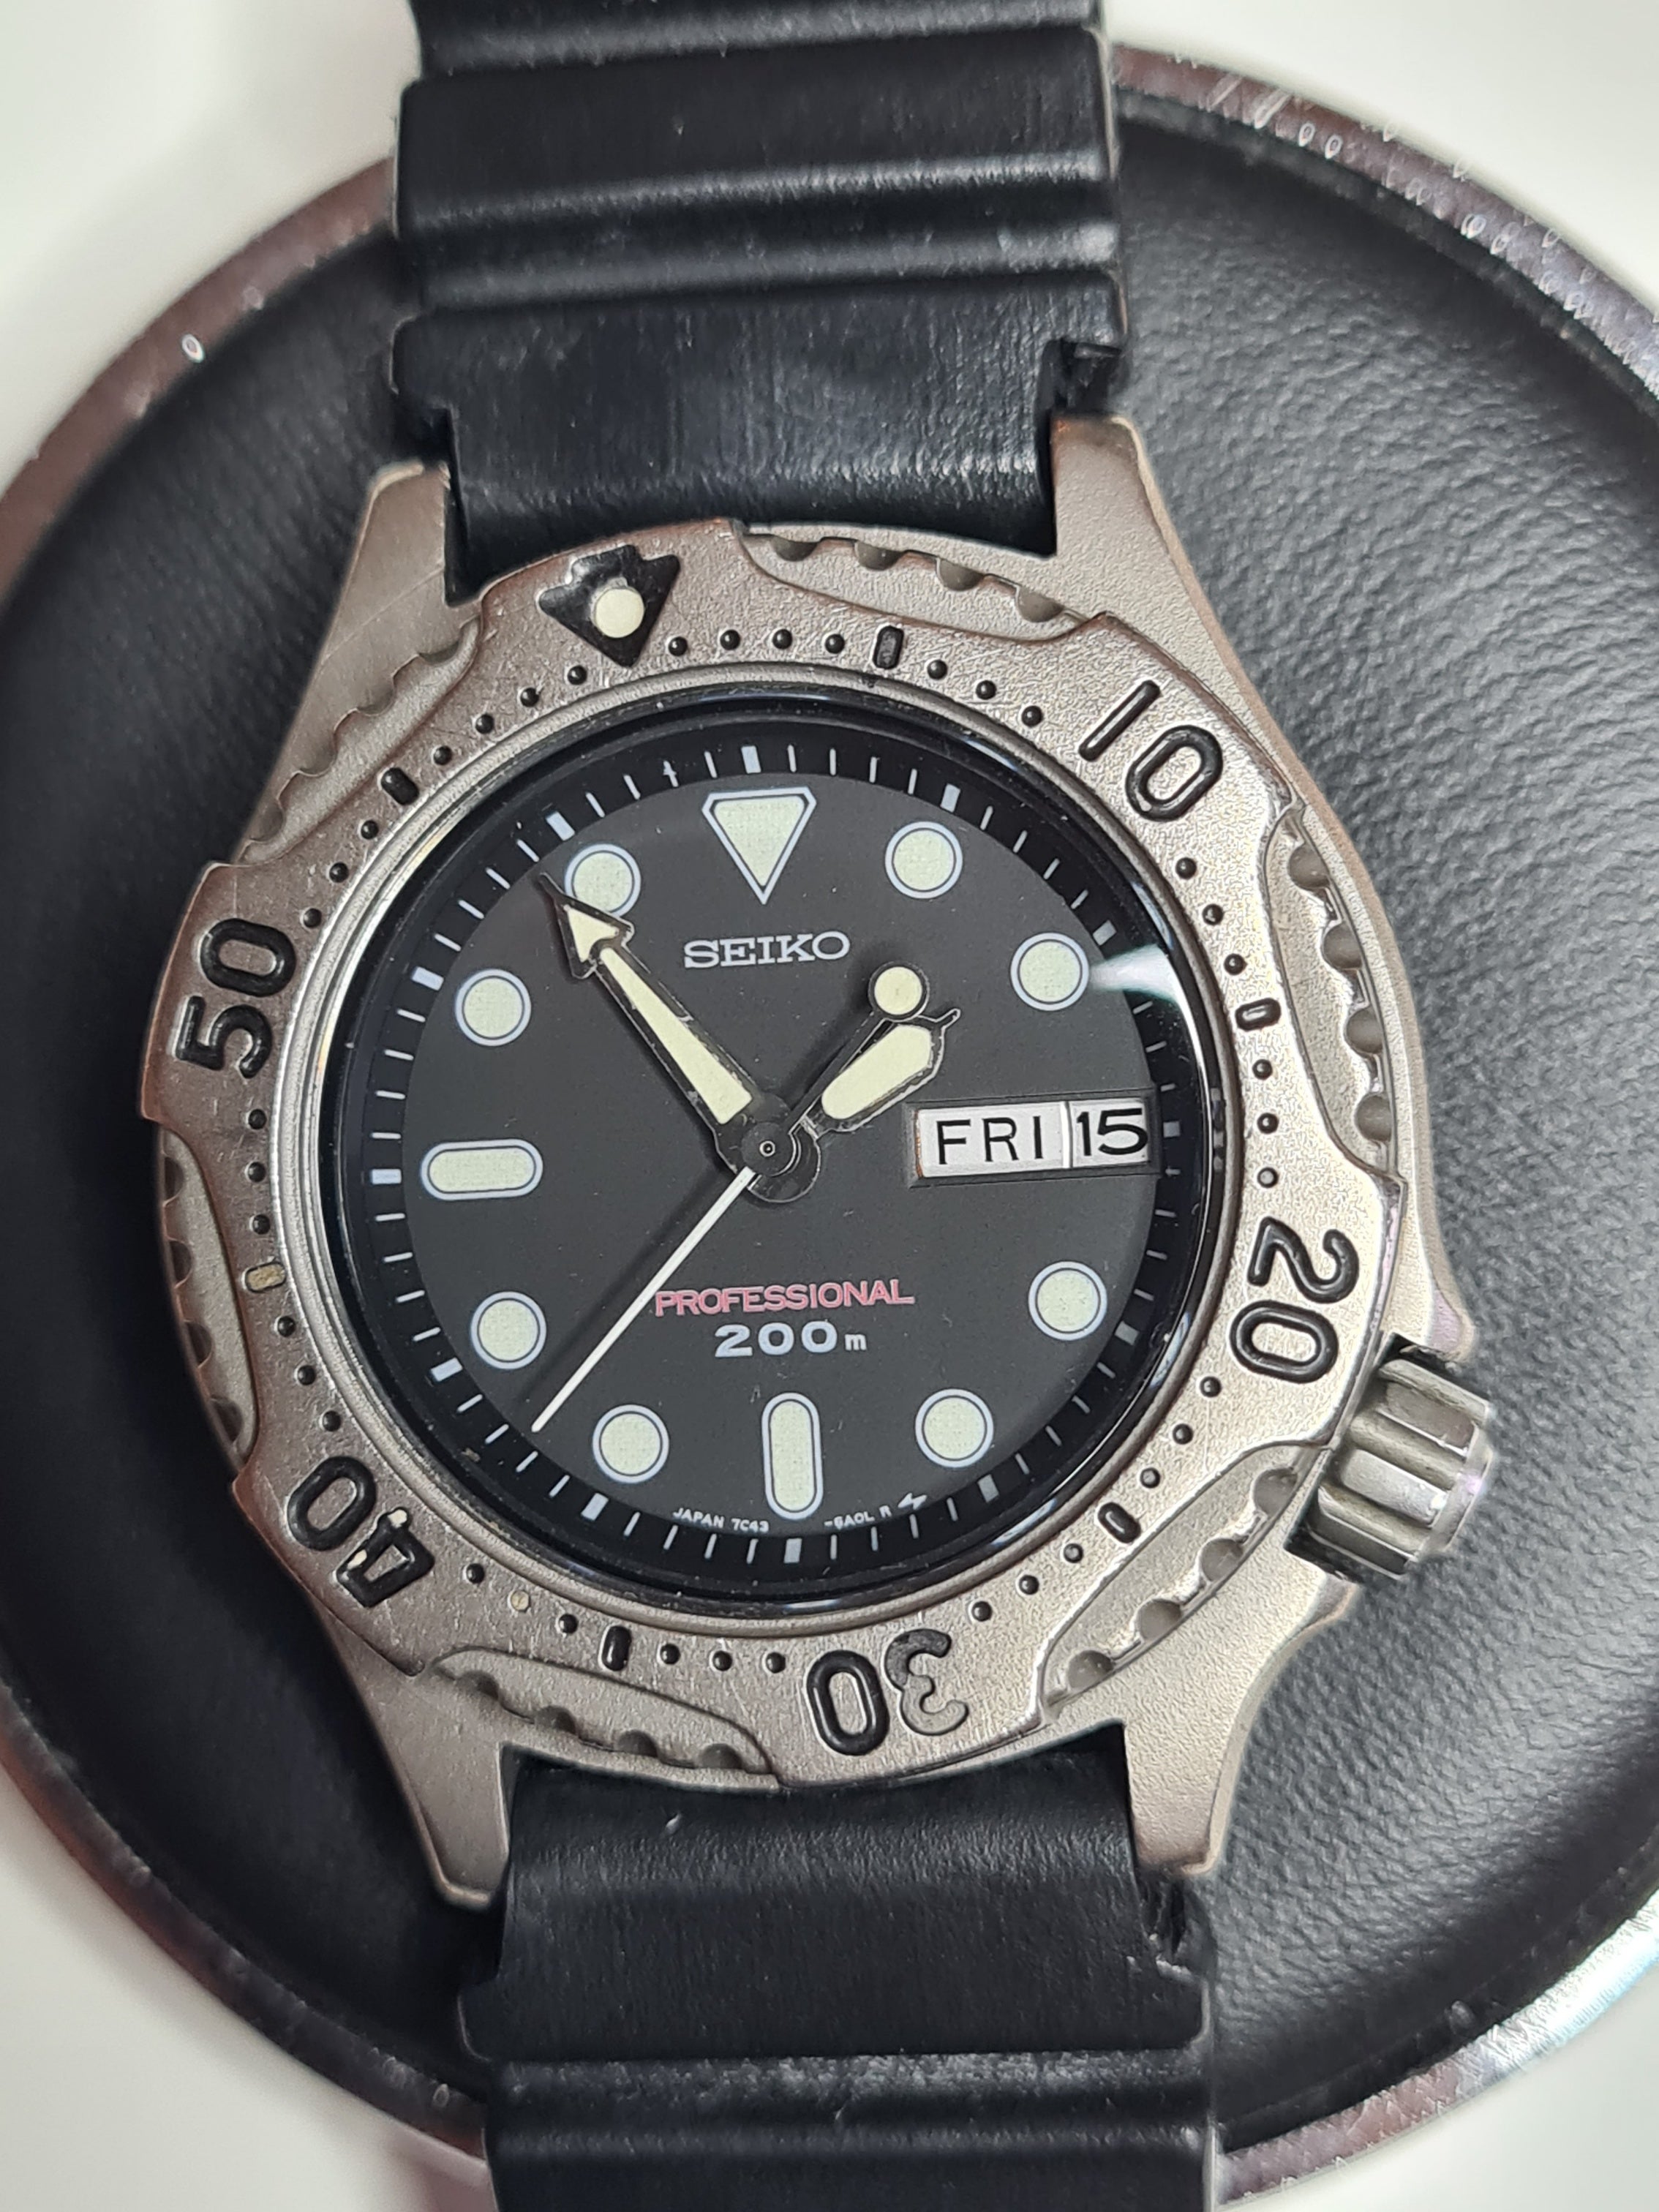 7C43-6A10 Quartz Diver | The Watch Site